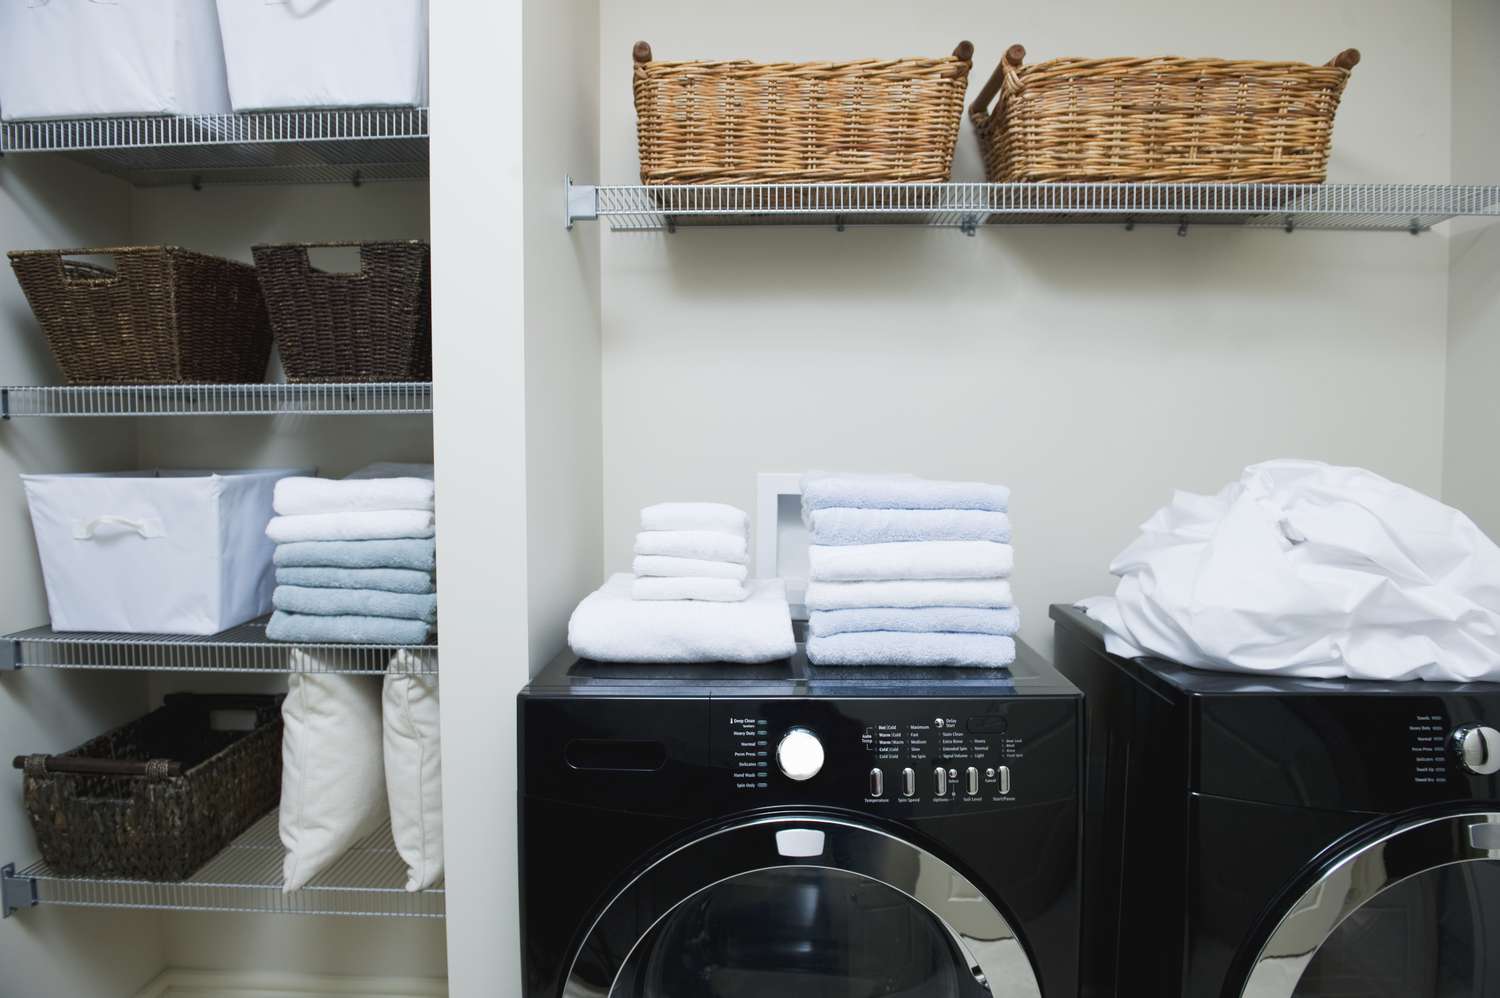 Verdrahtung typischer Wäschereikreise